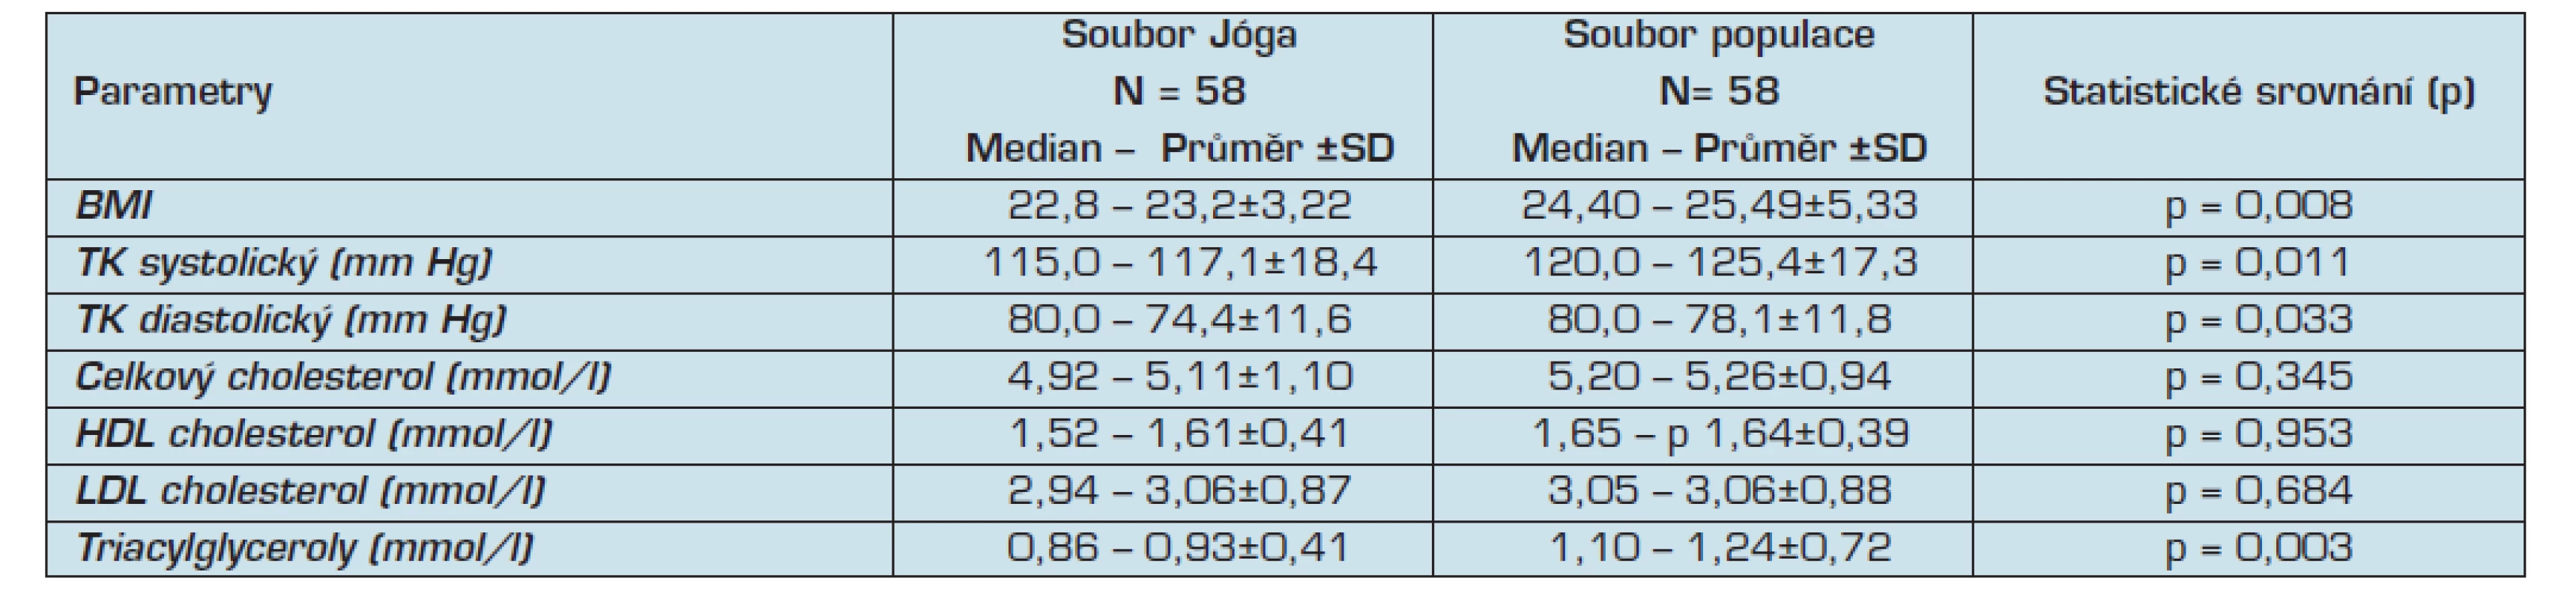 Srovnání základních parametrů souboru Jóga se souborem BP